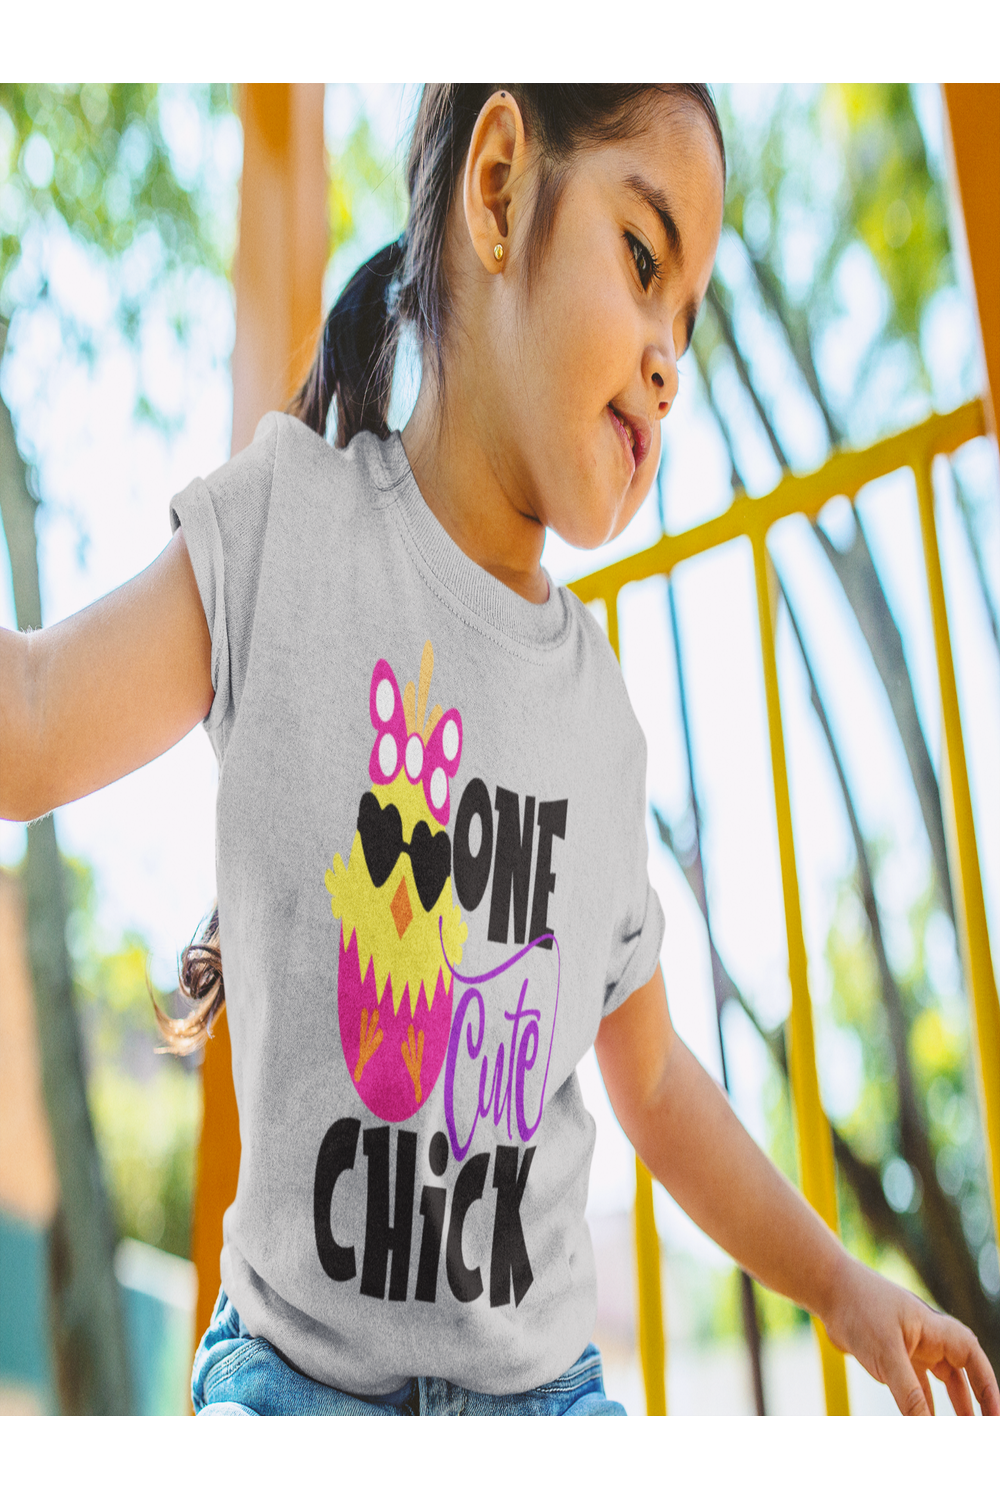 Girls Cute Chick Easter Short Sleeve Crewneck T-Shirt - NicholesGifts.online